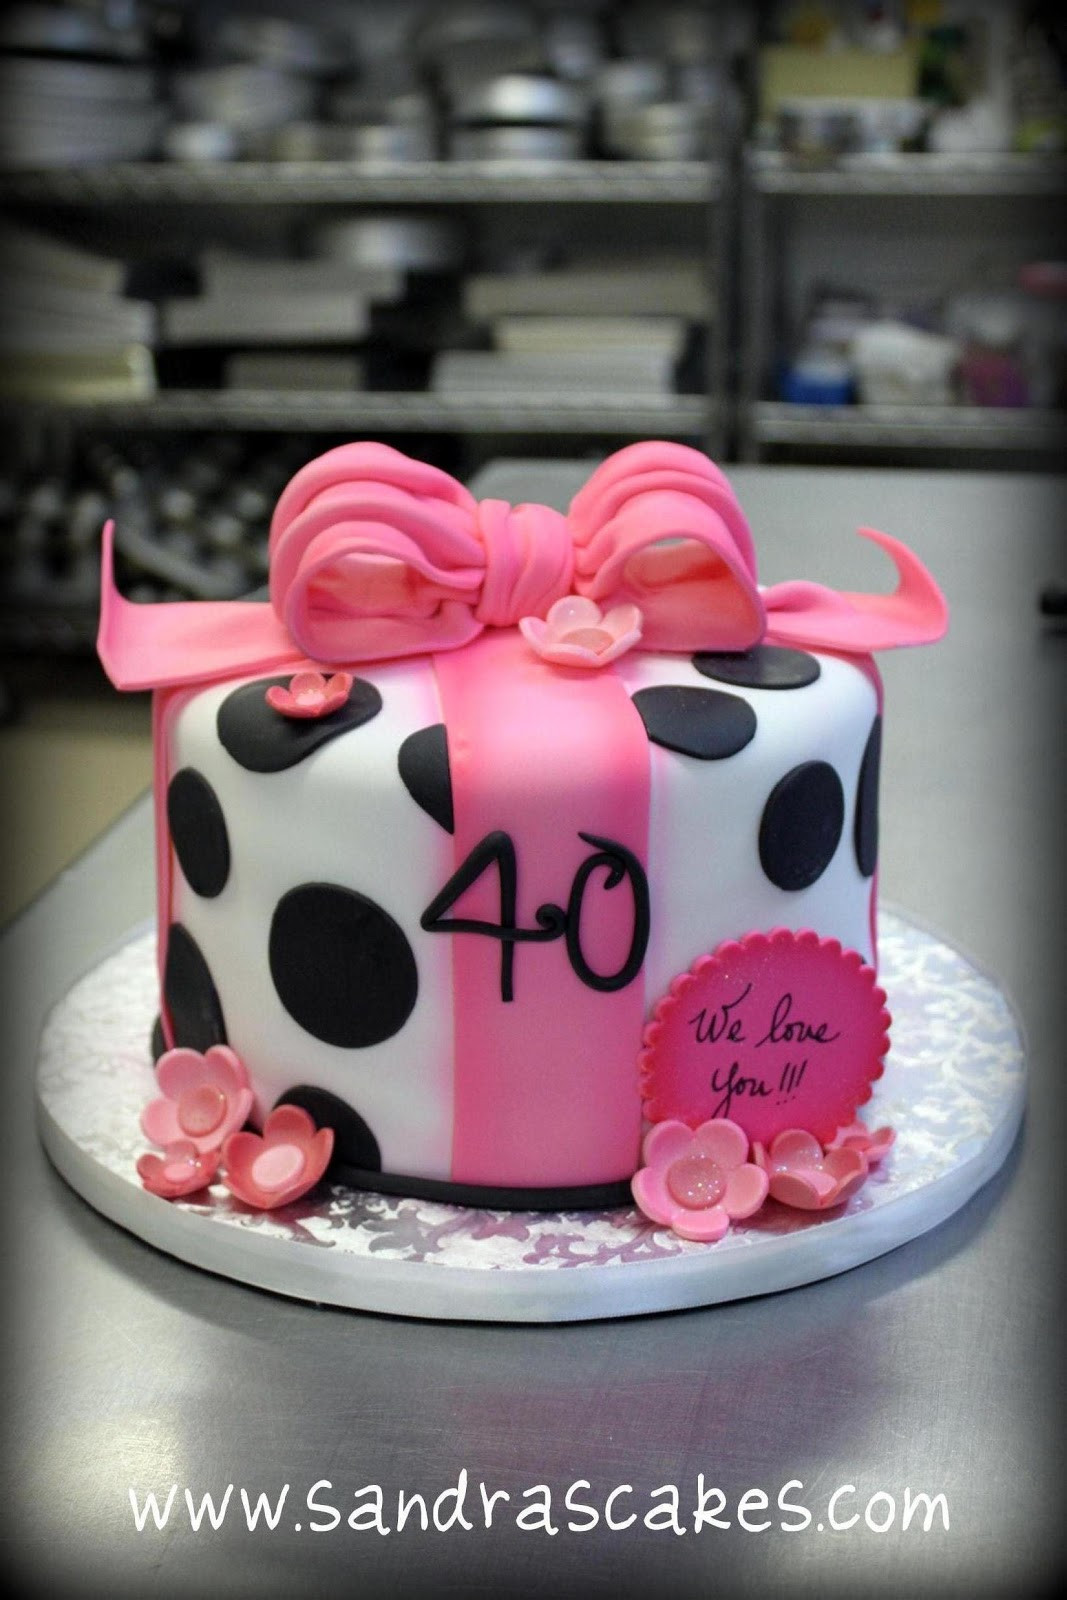 Creative Birthday Cakes
 UNIQUE BIRTHDAY CAKES